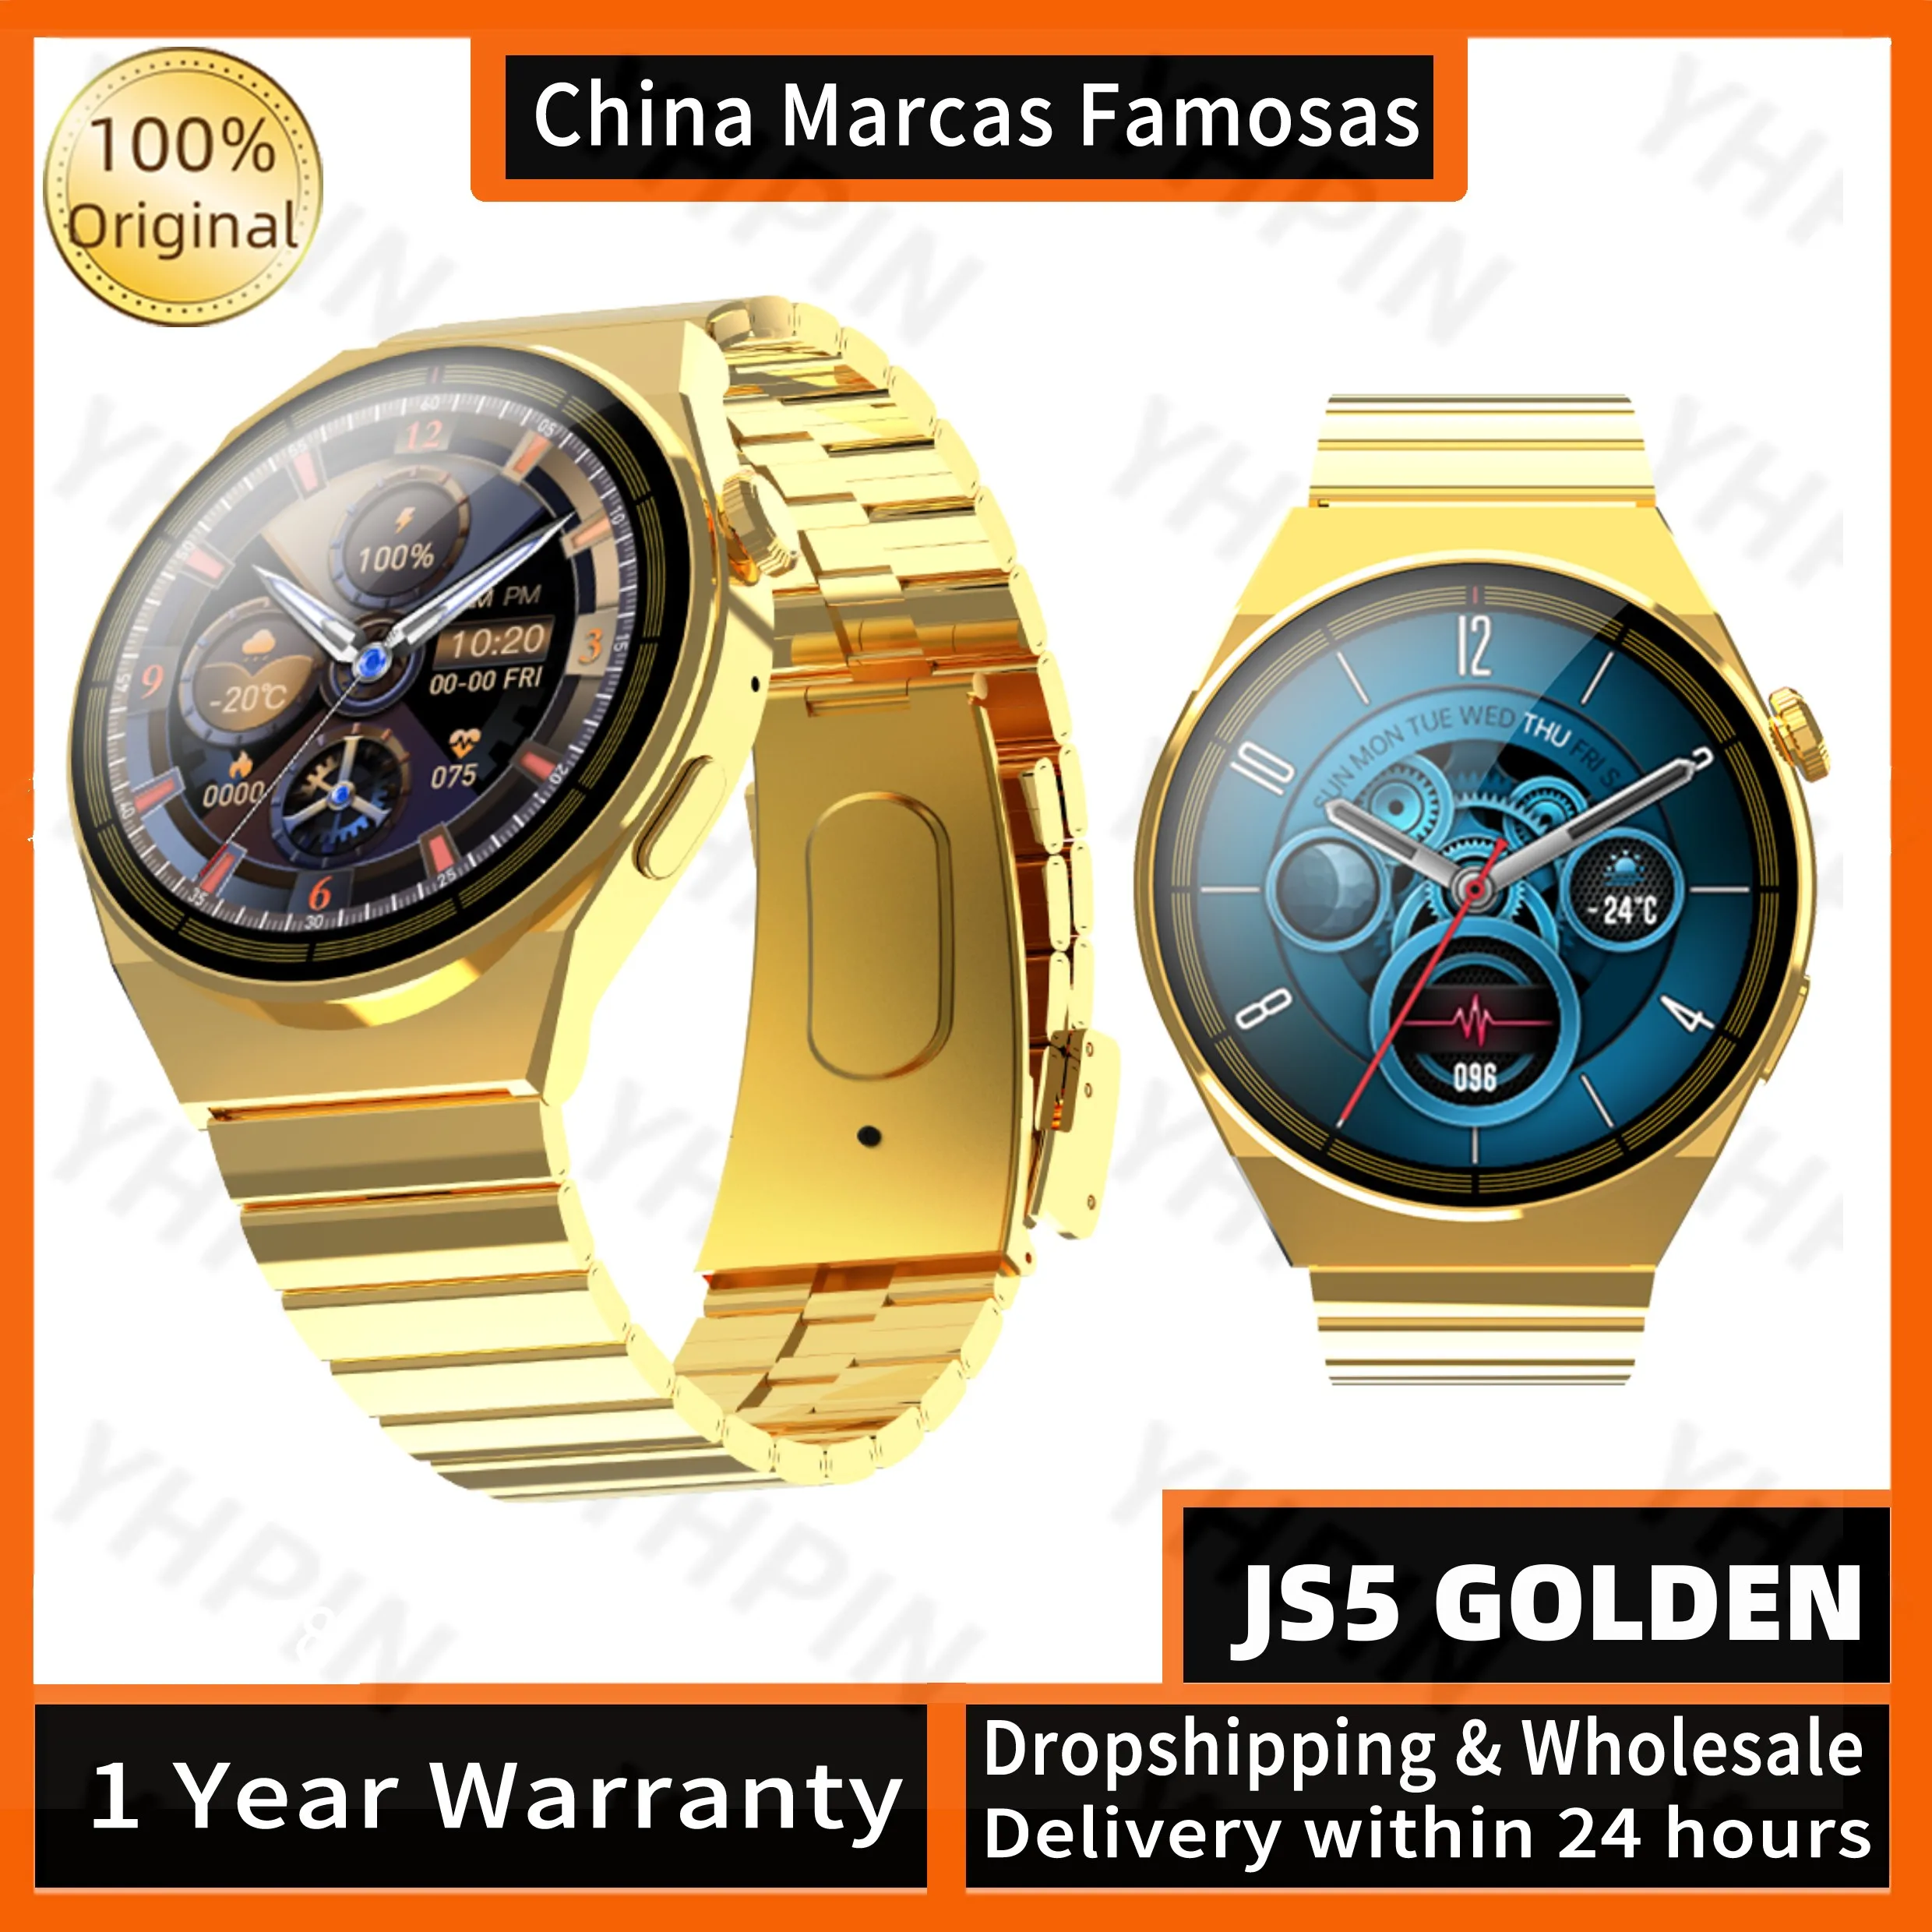 

2023 оригинальные золотые часы JS5, золотистые, многофункциональные, с функцией Голосового помощника, прикроватные часы, 1,52 дюймовый HD цветной экран, умные часы